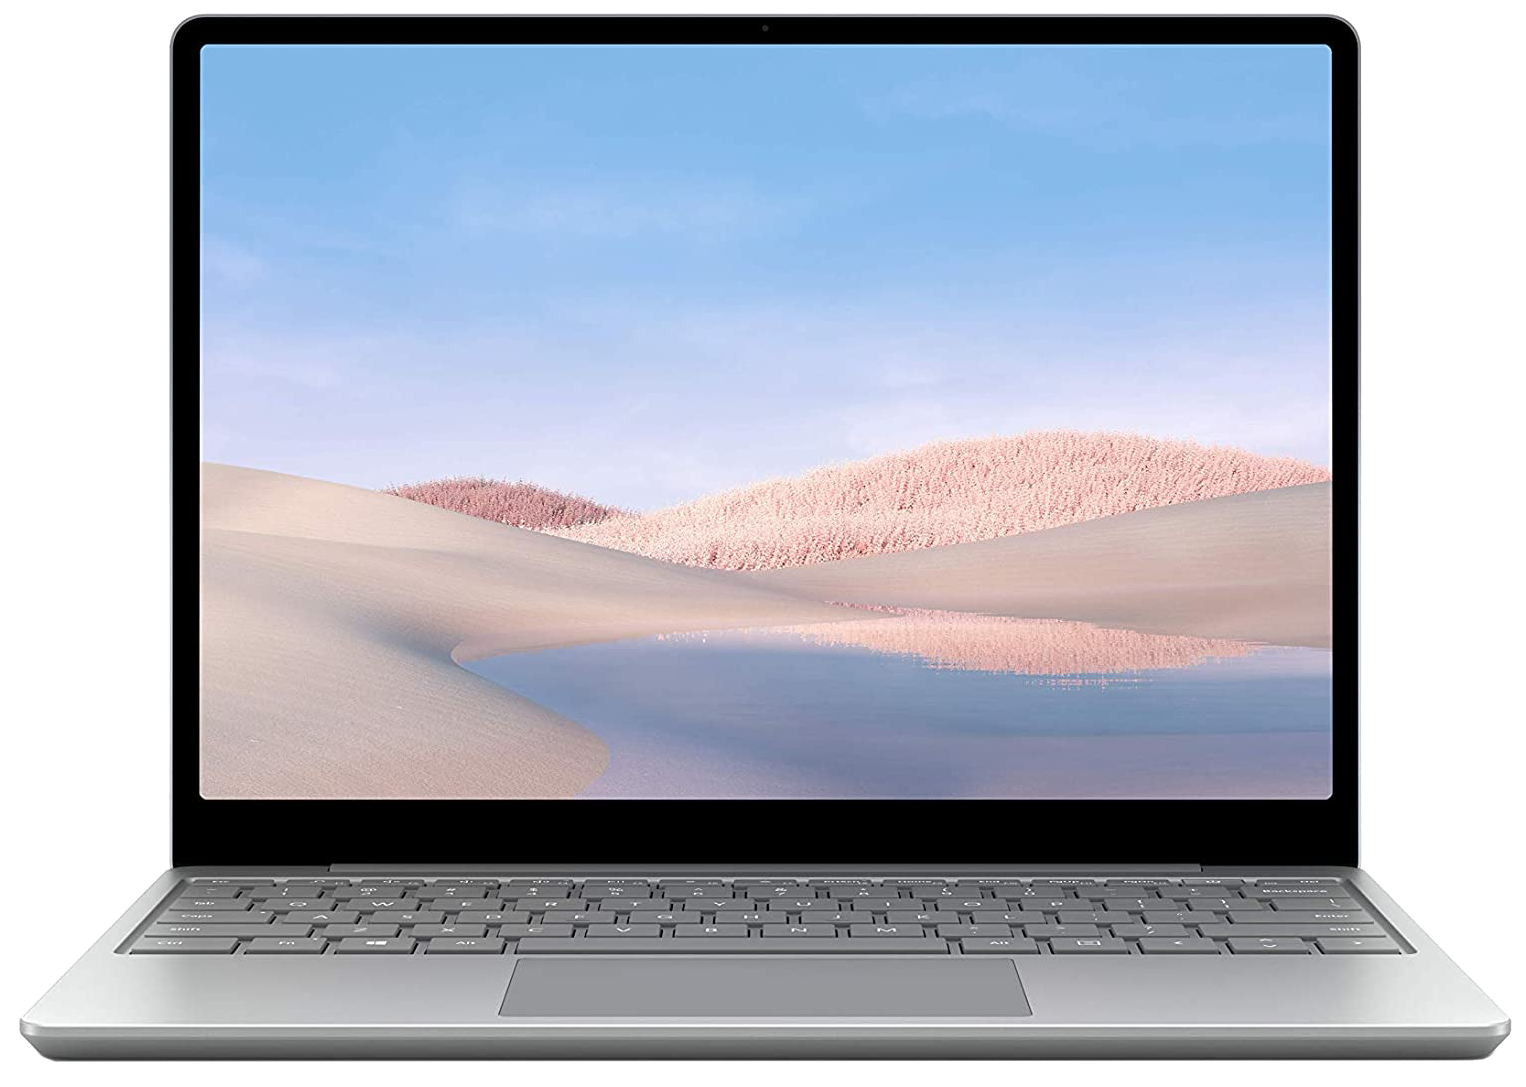 Microsoft Surface Laptop Go i5-1035G1 RAM 8GB 128GB SSD grau - Ohne Vertrag